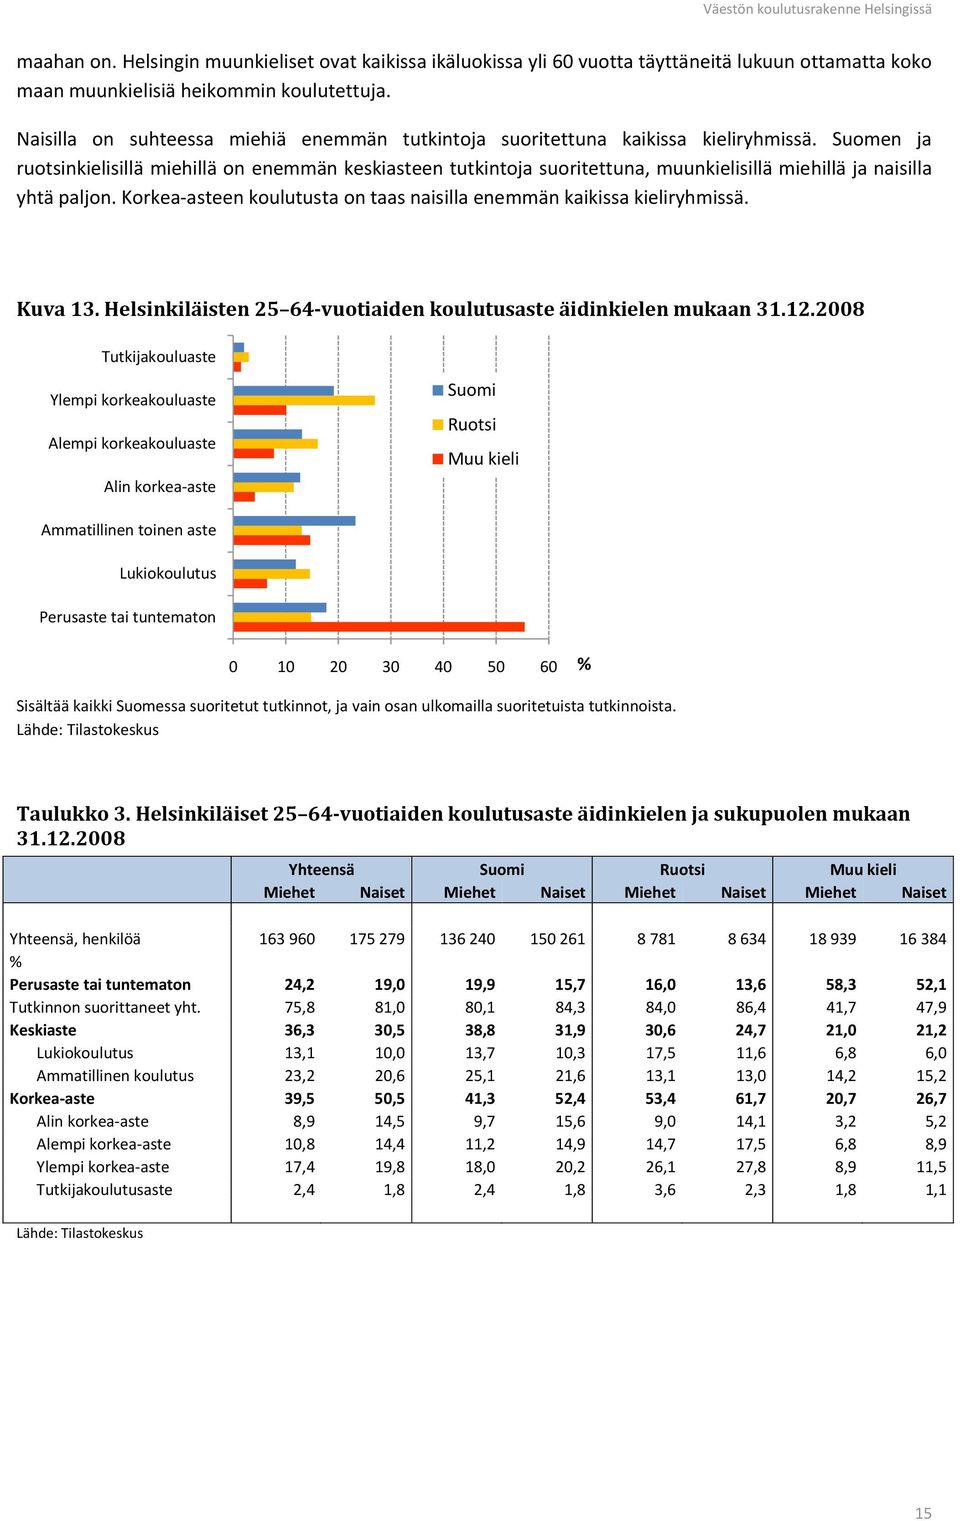 Suomen ja ruotsinkielisillä miehillä on enemmän keskiasteen tutkintoja suoritettuna, muunkielisillä miehillä ja naisilla yhtä paljon.